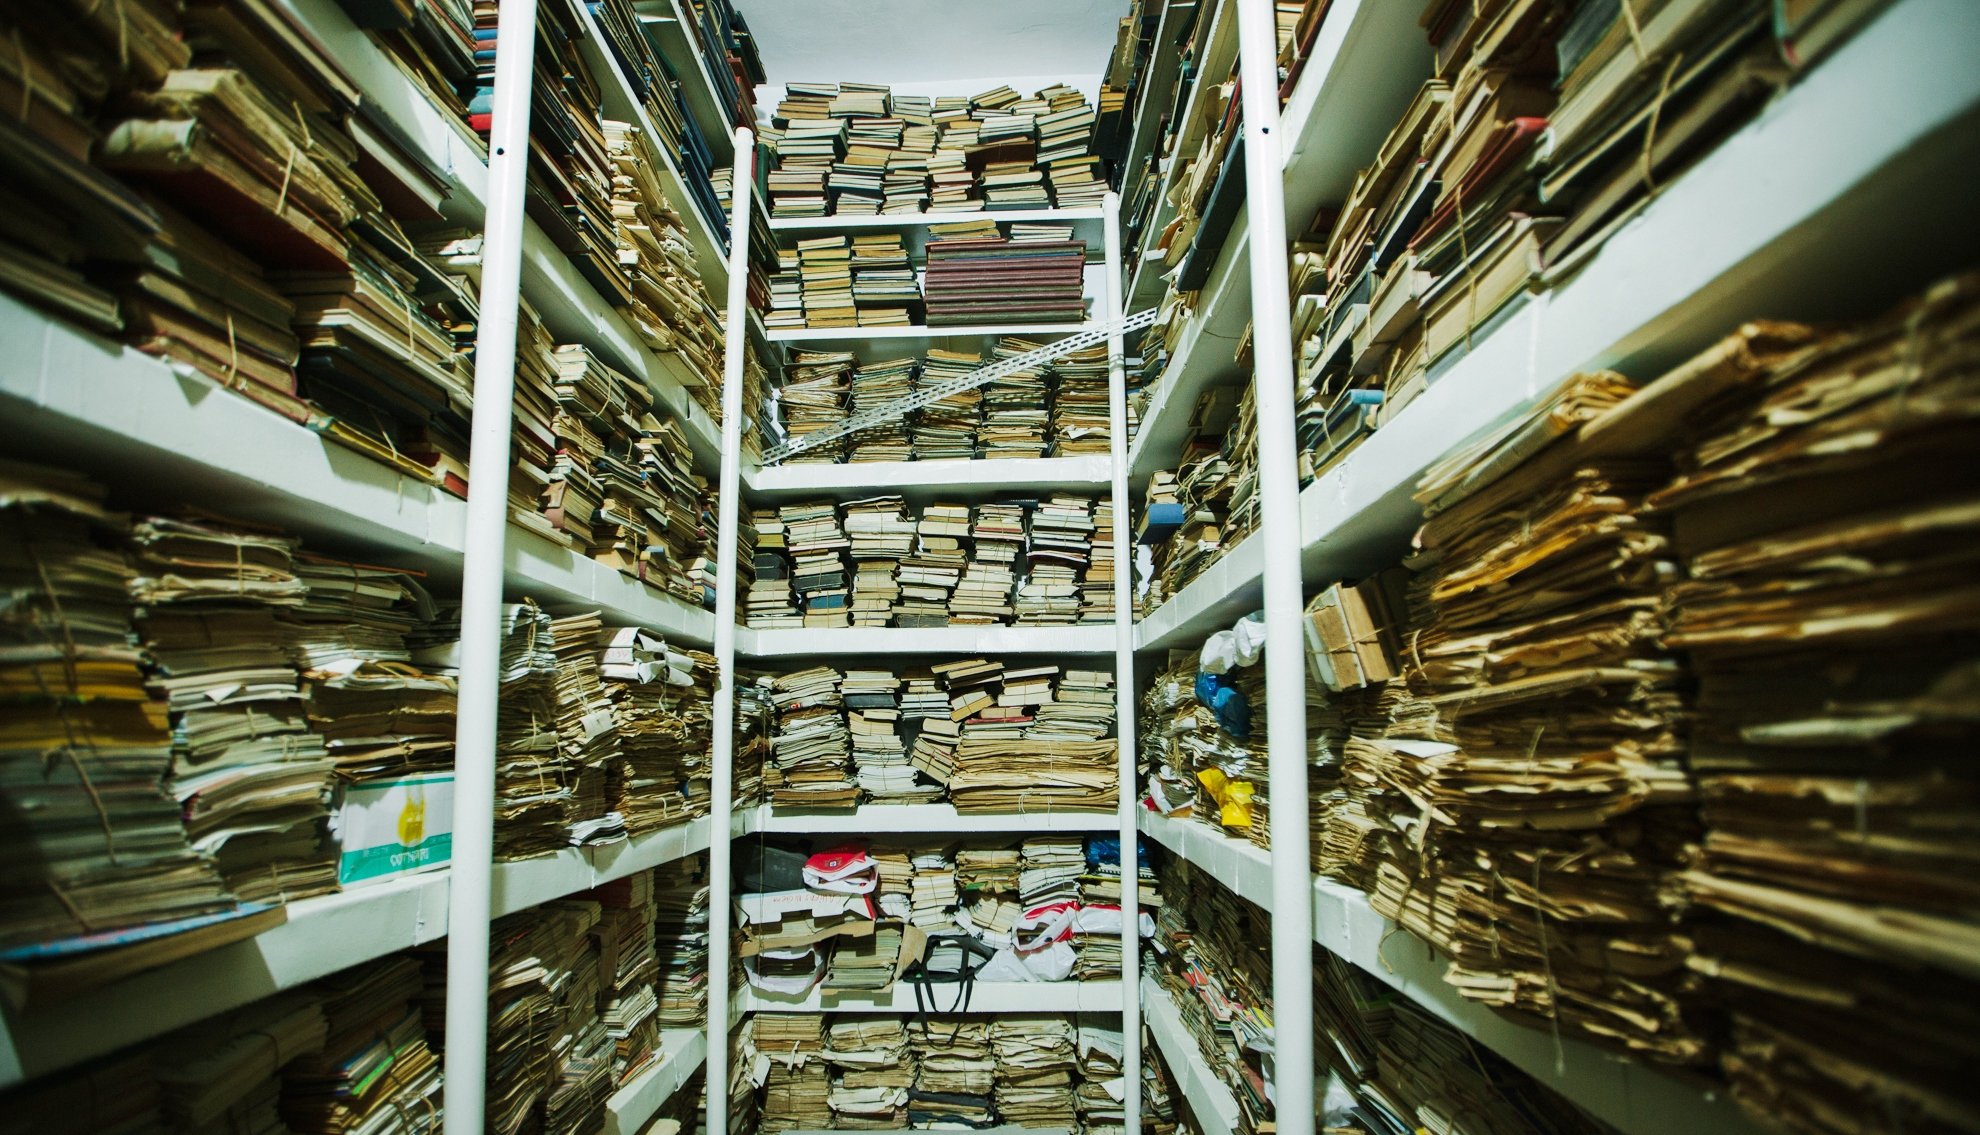  Victoria spionilor: Arhivele Române opresc de la cercetare fondurile cu documente din comunism